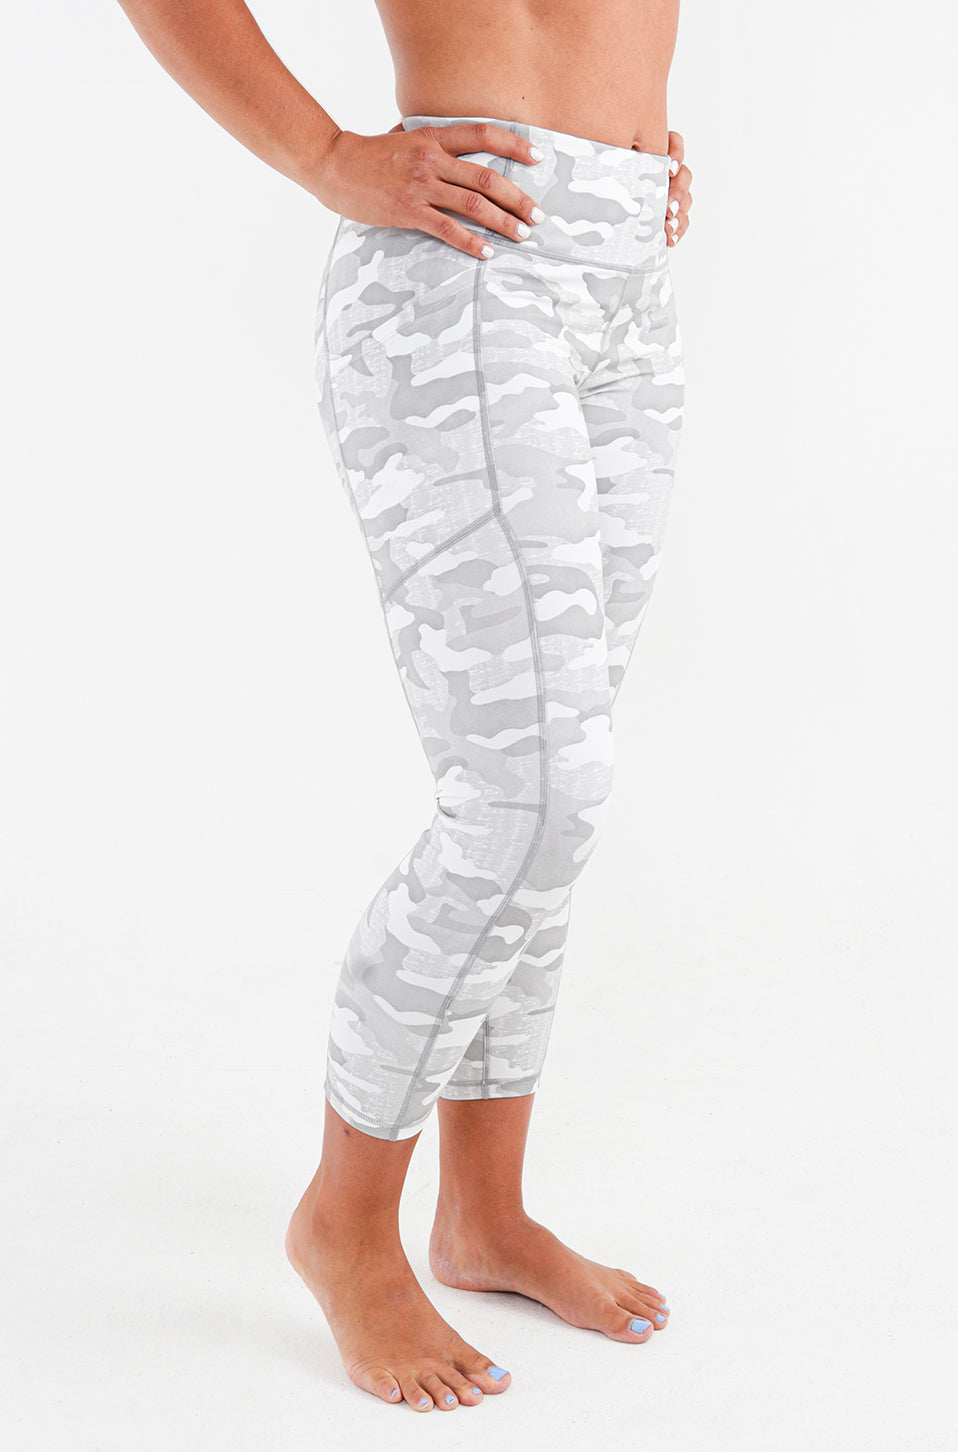 Lululemon White Capri Swift Leggings Size 2 - $36 (68% Off Retail) - From  Savannah